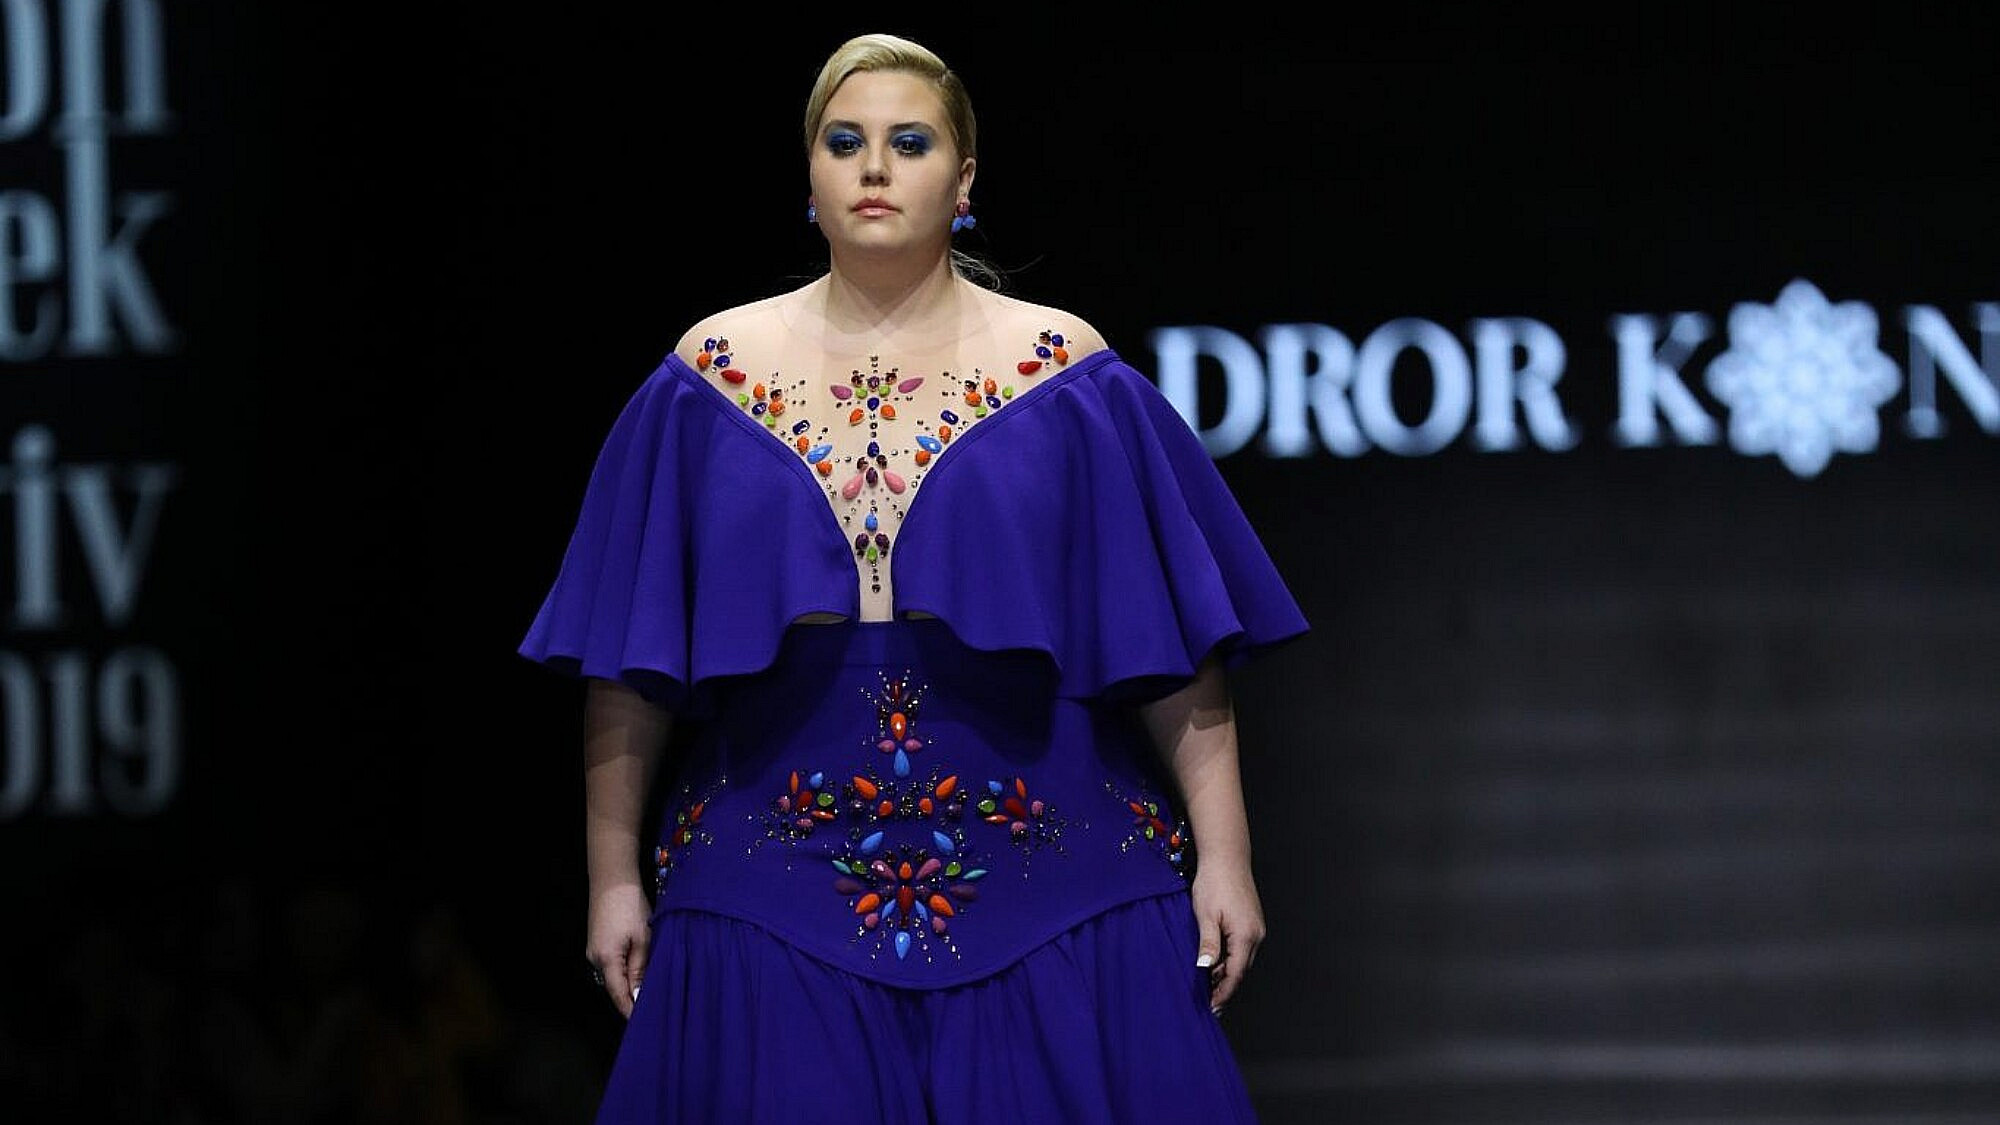 דרור קונטנטו מתוך שבוע האופנה תל אביב 2019. צילום אדריאן סבל